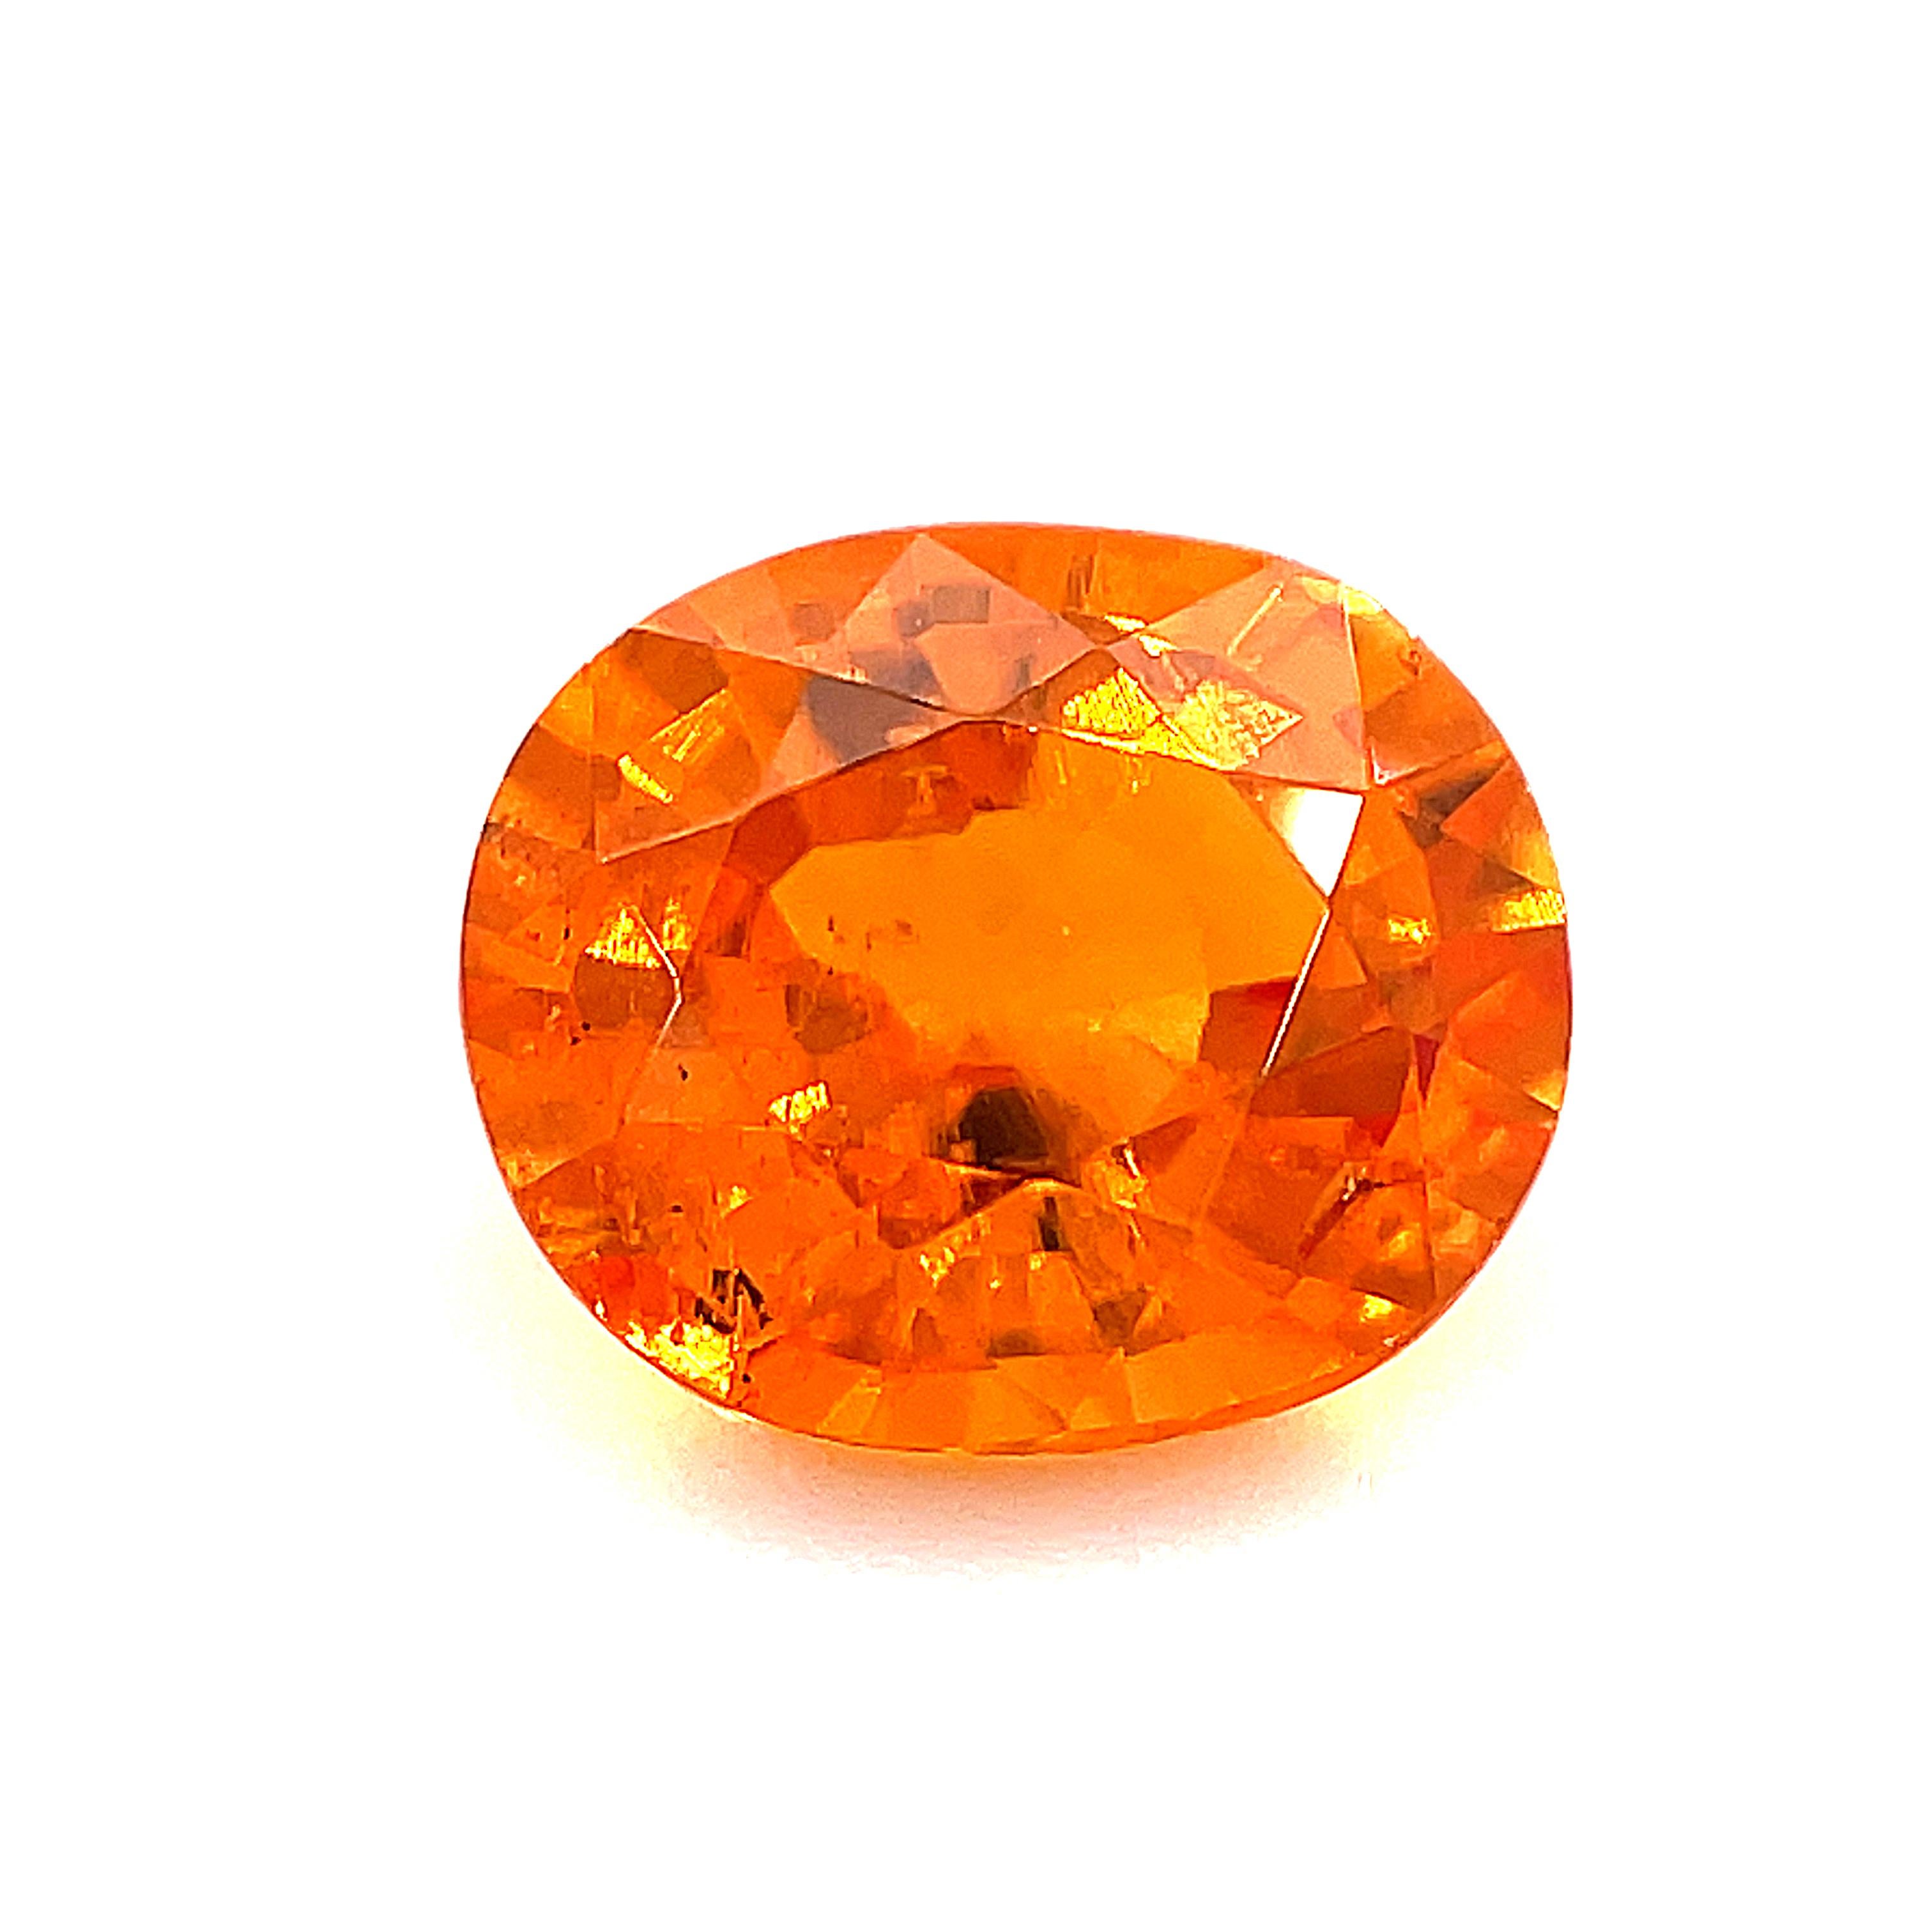 Ce brillant grenat spessartite a une belle couleur orange électrique ! Mesurant 8,26 x 7,14 x 4,65 millimètres, c'est un ovale joliment proportionné qui ferait une belle bague ou un beau pendentif. Il a la couleur orange vibrante d'une mandarine ou